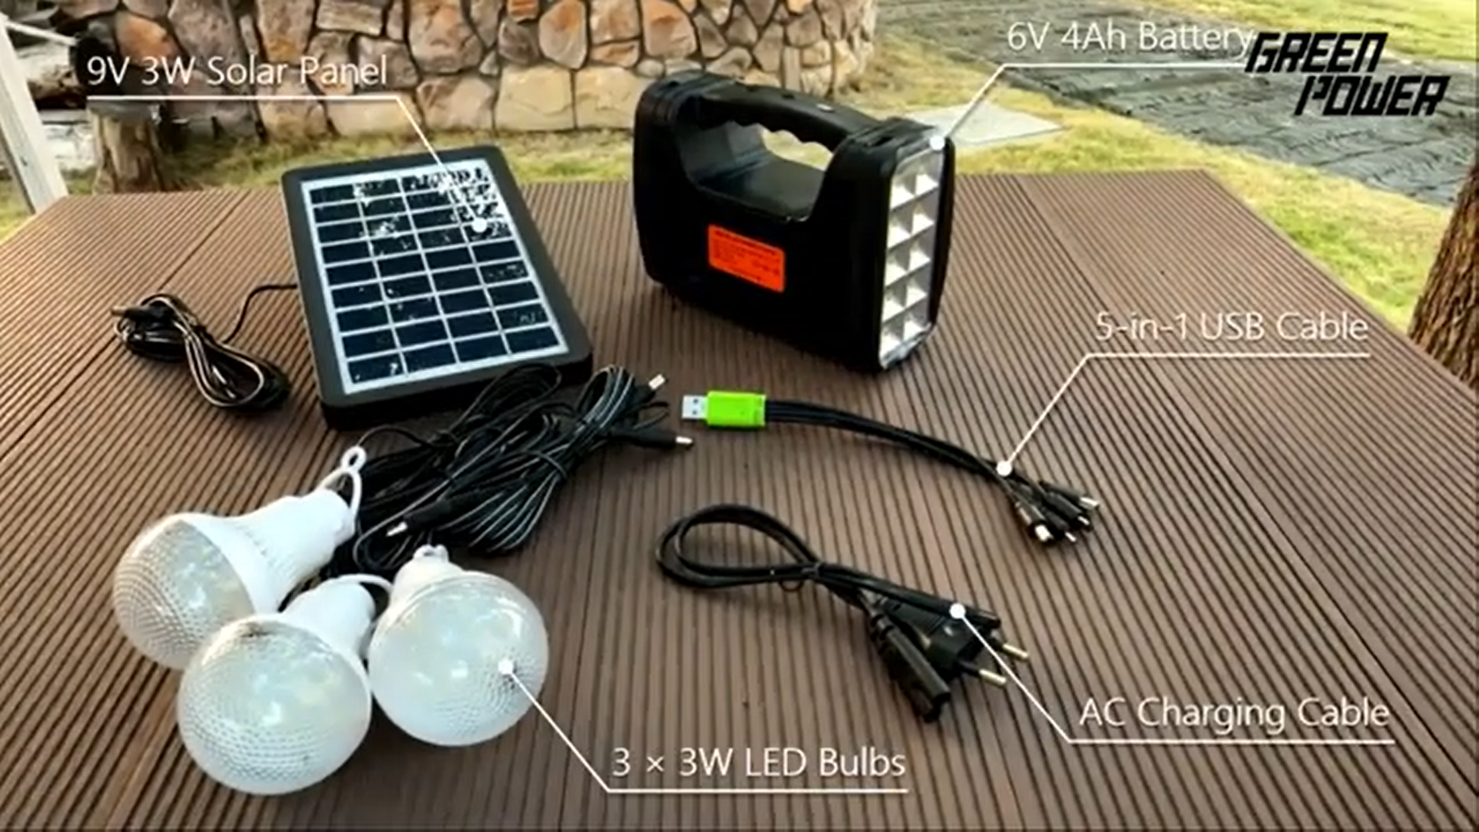 Мини-комплекты солнечного освещения GP 351 — простое и быстрое решение для освещения домов, в которых отсутствует электричество.